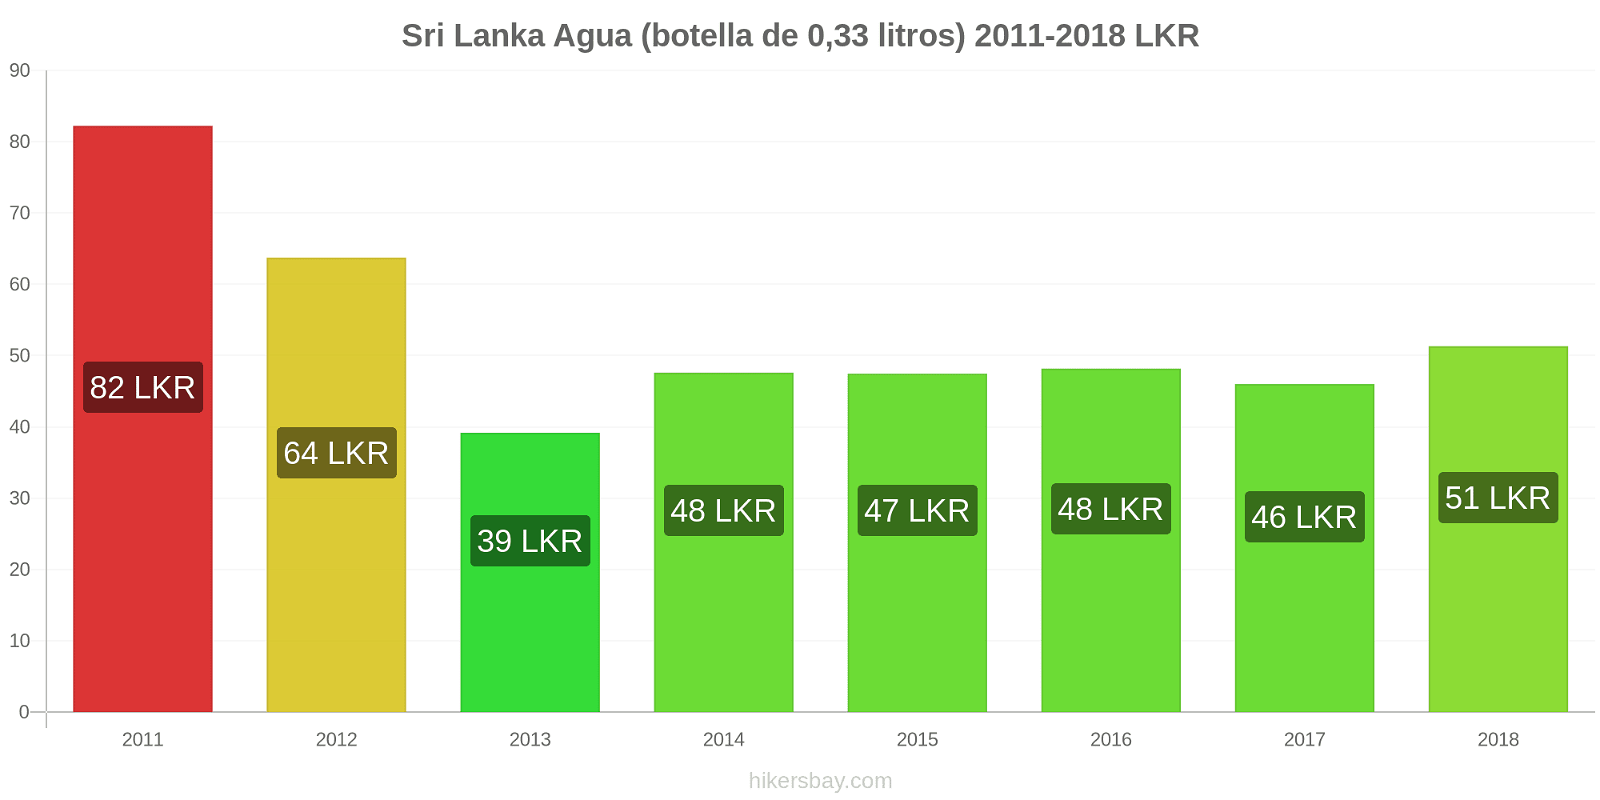 Sri Lanka cambios de precios Agua (botella de 0.33 litros) hikersbay.com